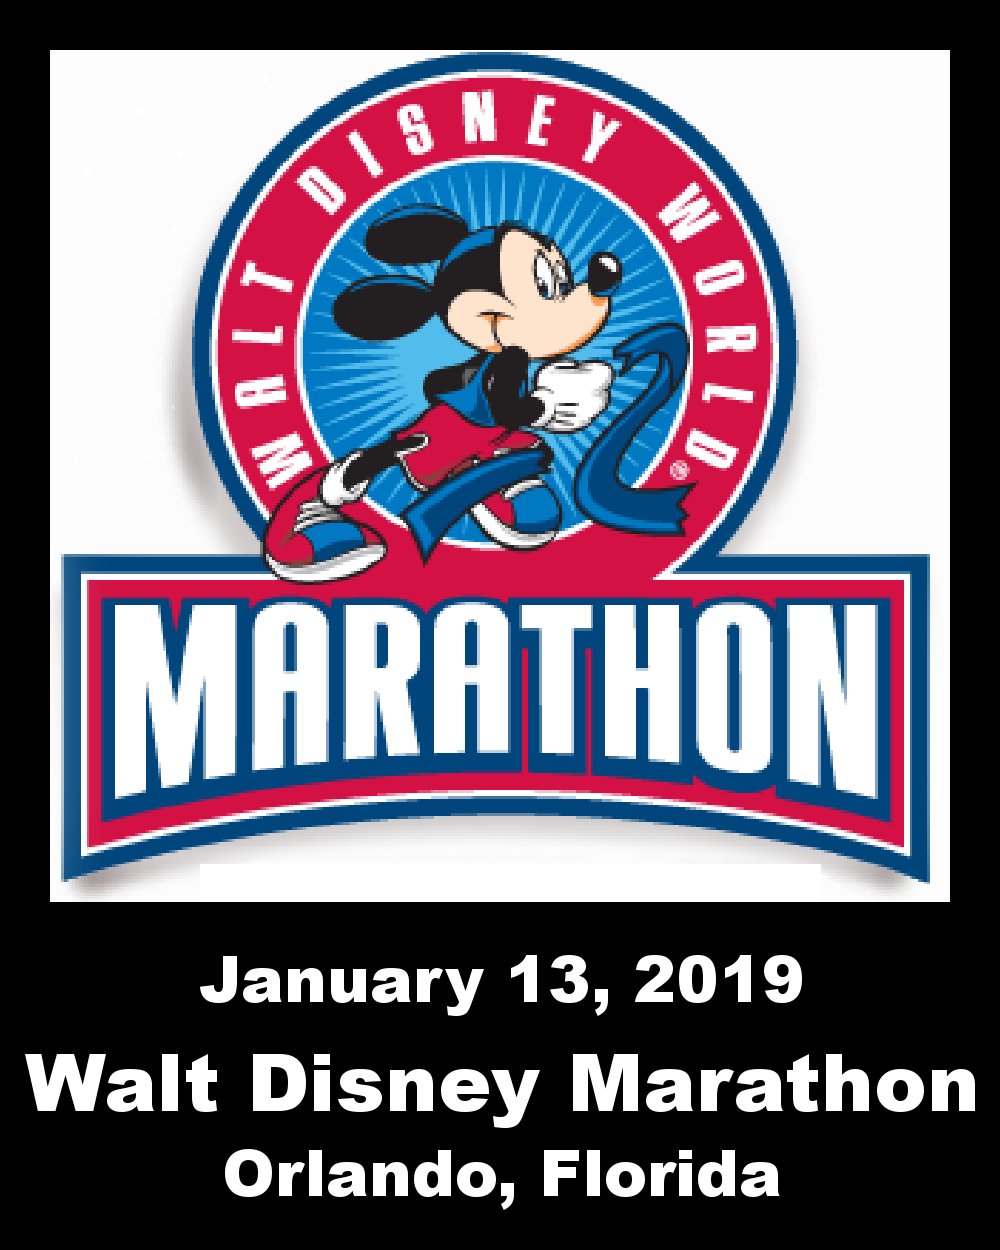 Walt Disney World Marathon Weekend Presented by Cigna